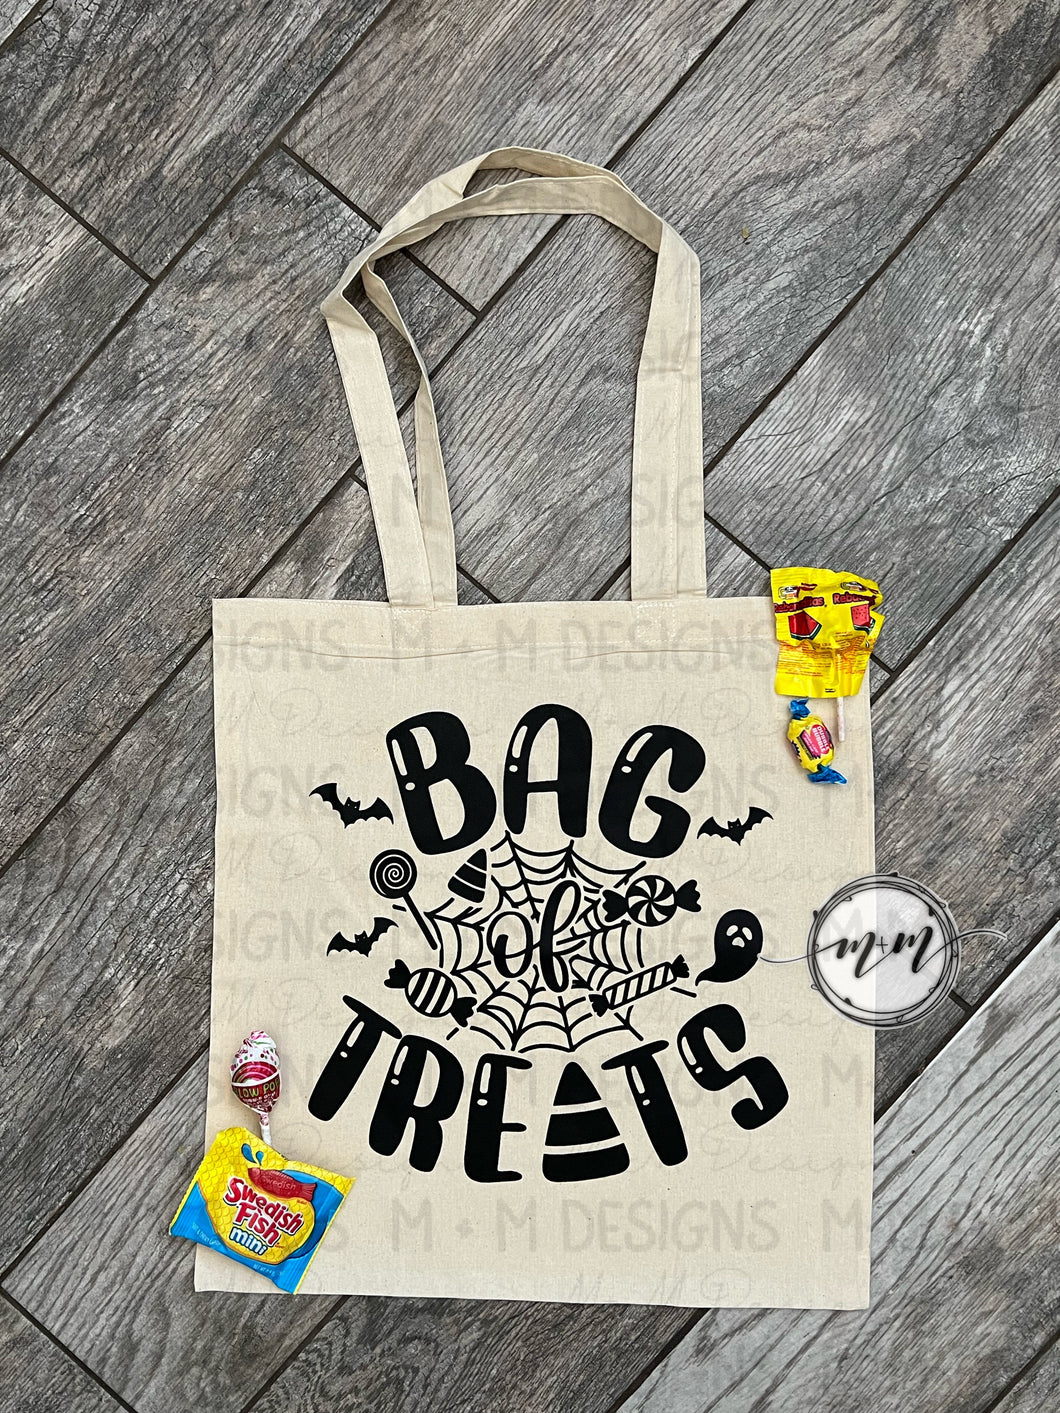 Bag treats